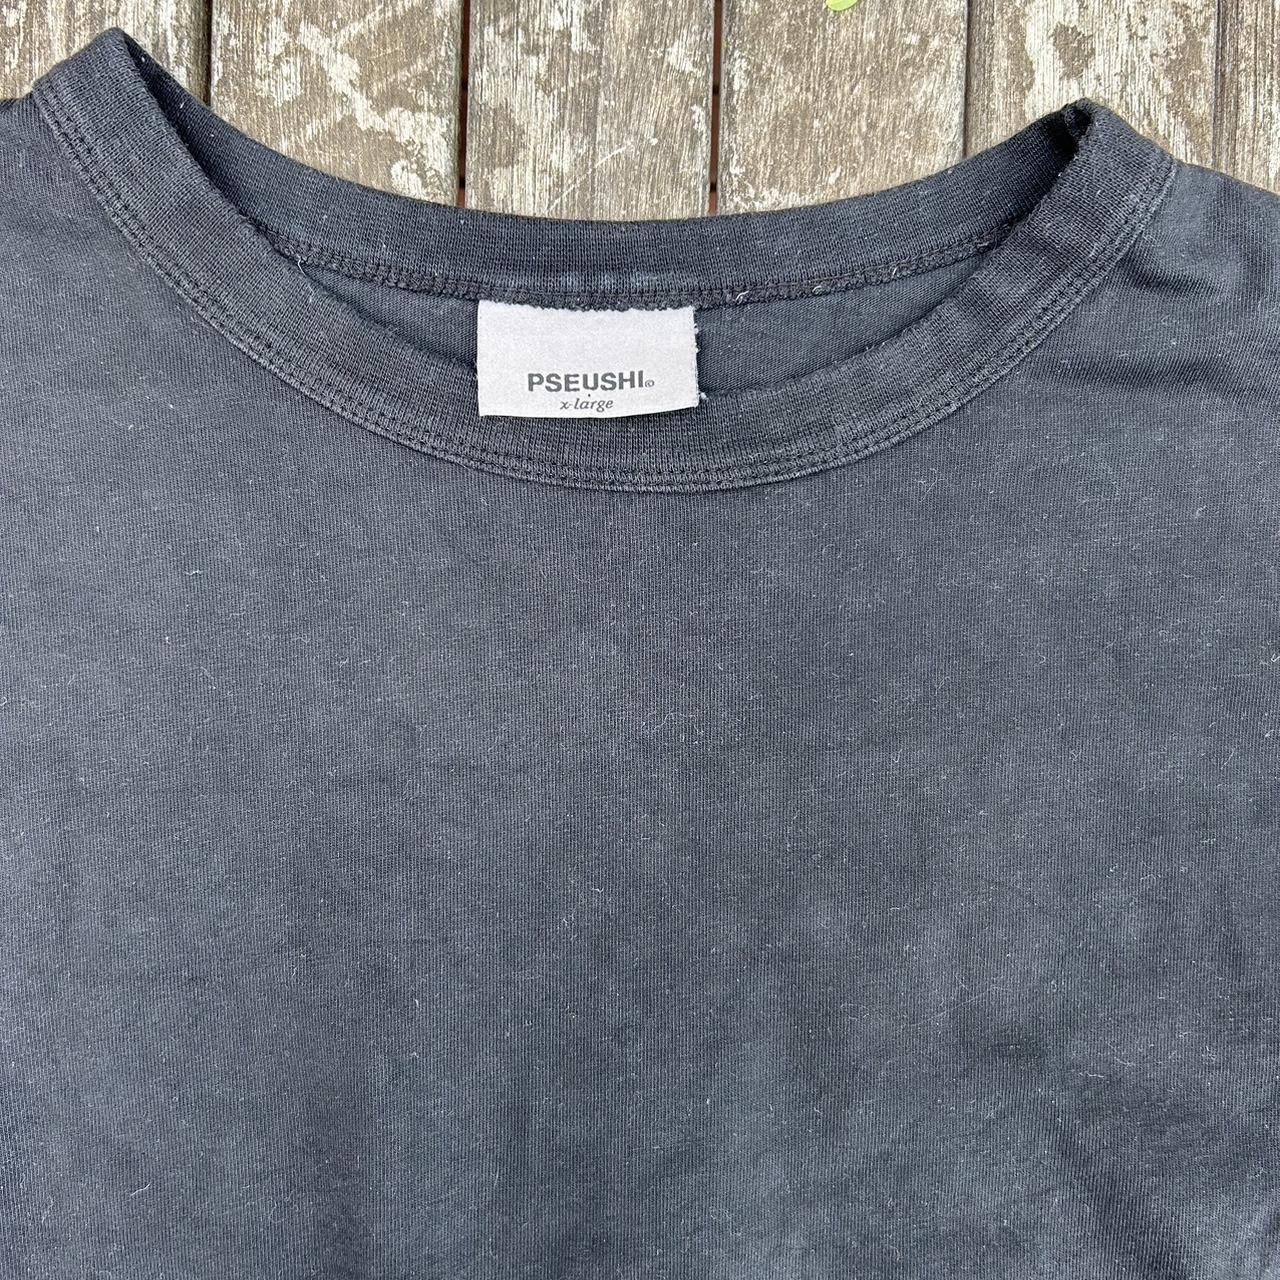 Selling pseushi black tshirt with logo on back. Size... - Depop